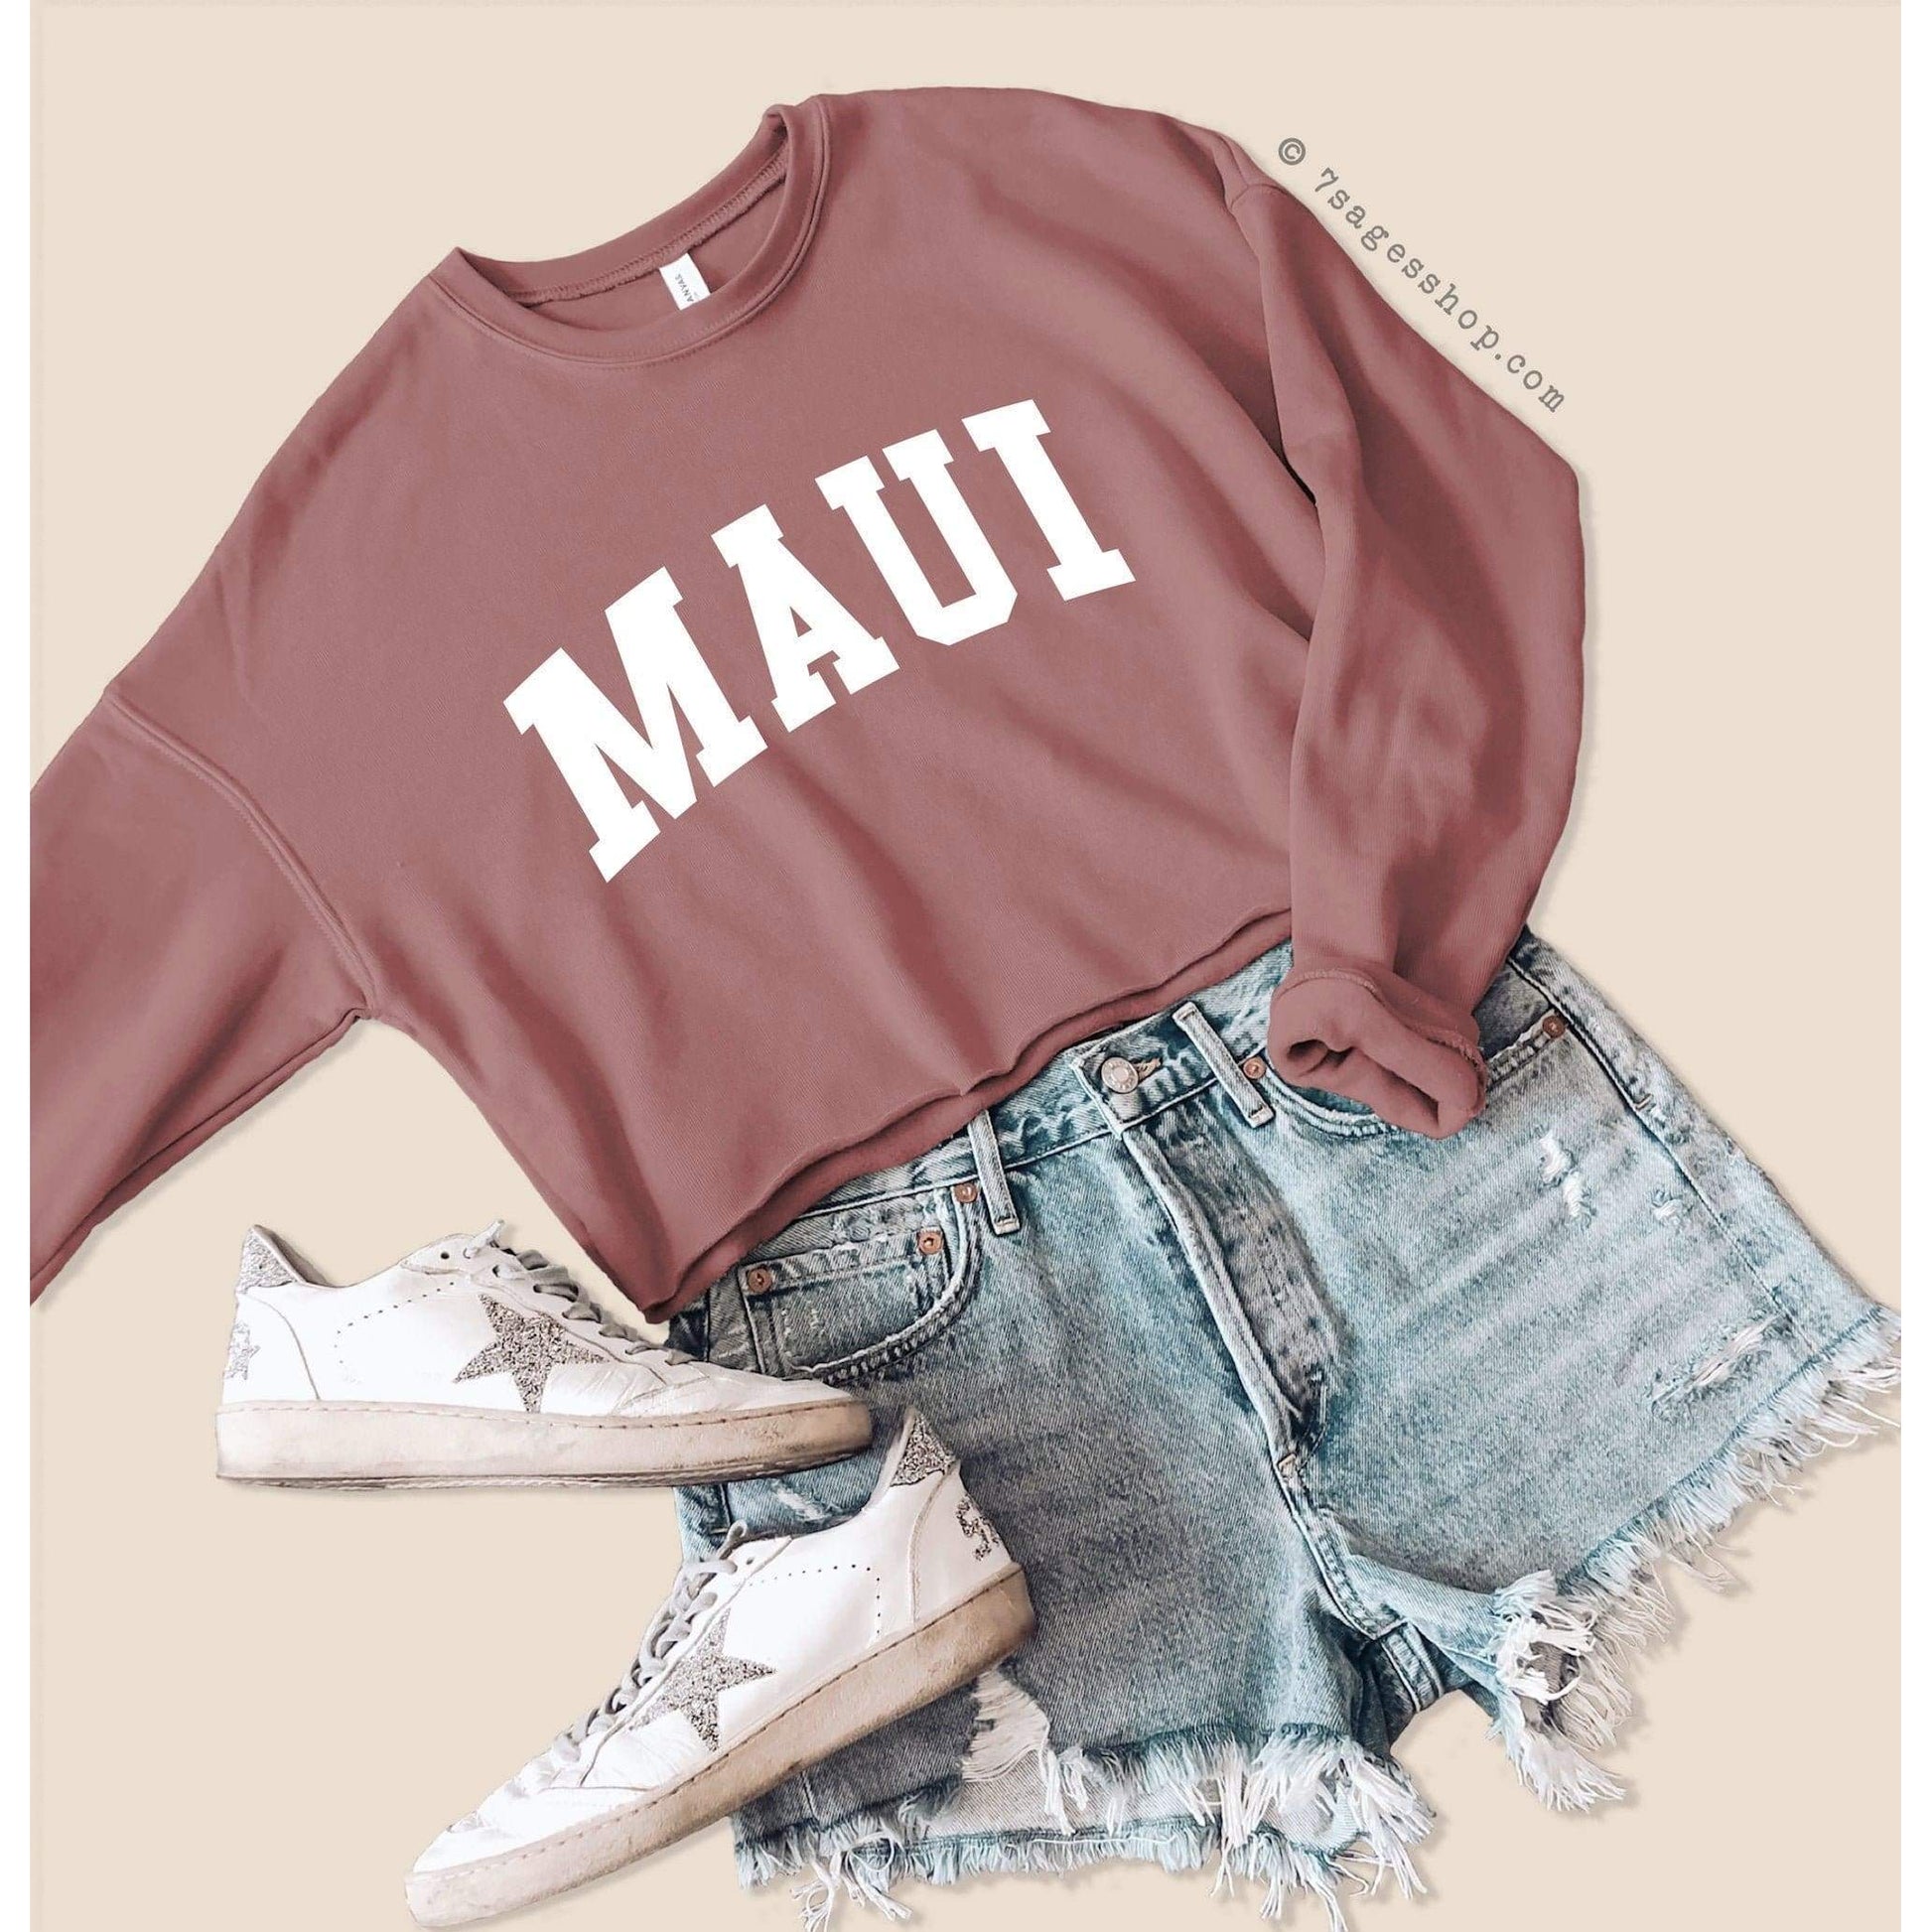 Maui Hawaii Sweatshirt - Hawaii Cropped Sweatshirt - Hawaii Shirt - Maui Sweatshirt - Maui Sweater - Fleece Sweater - Cropped Sweater